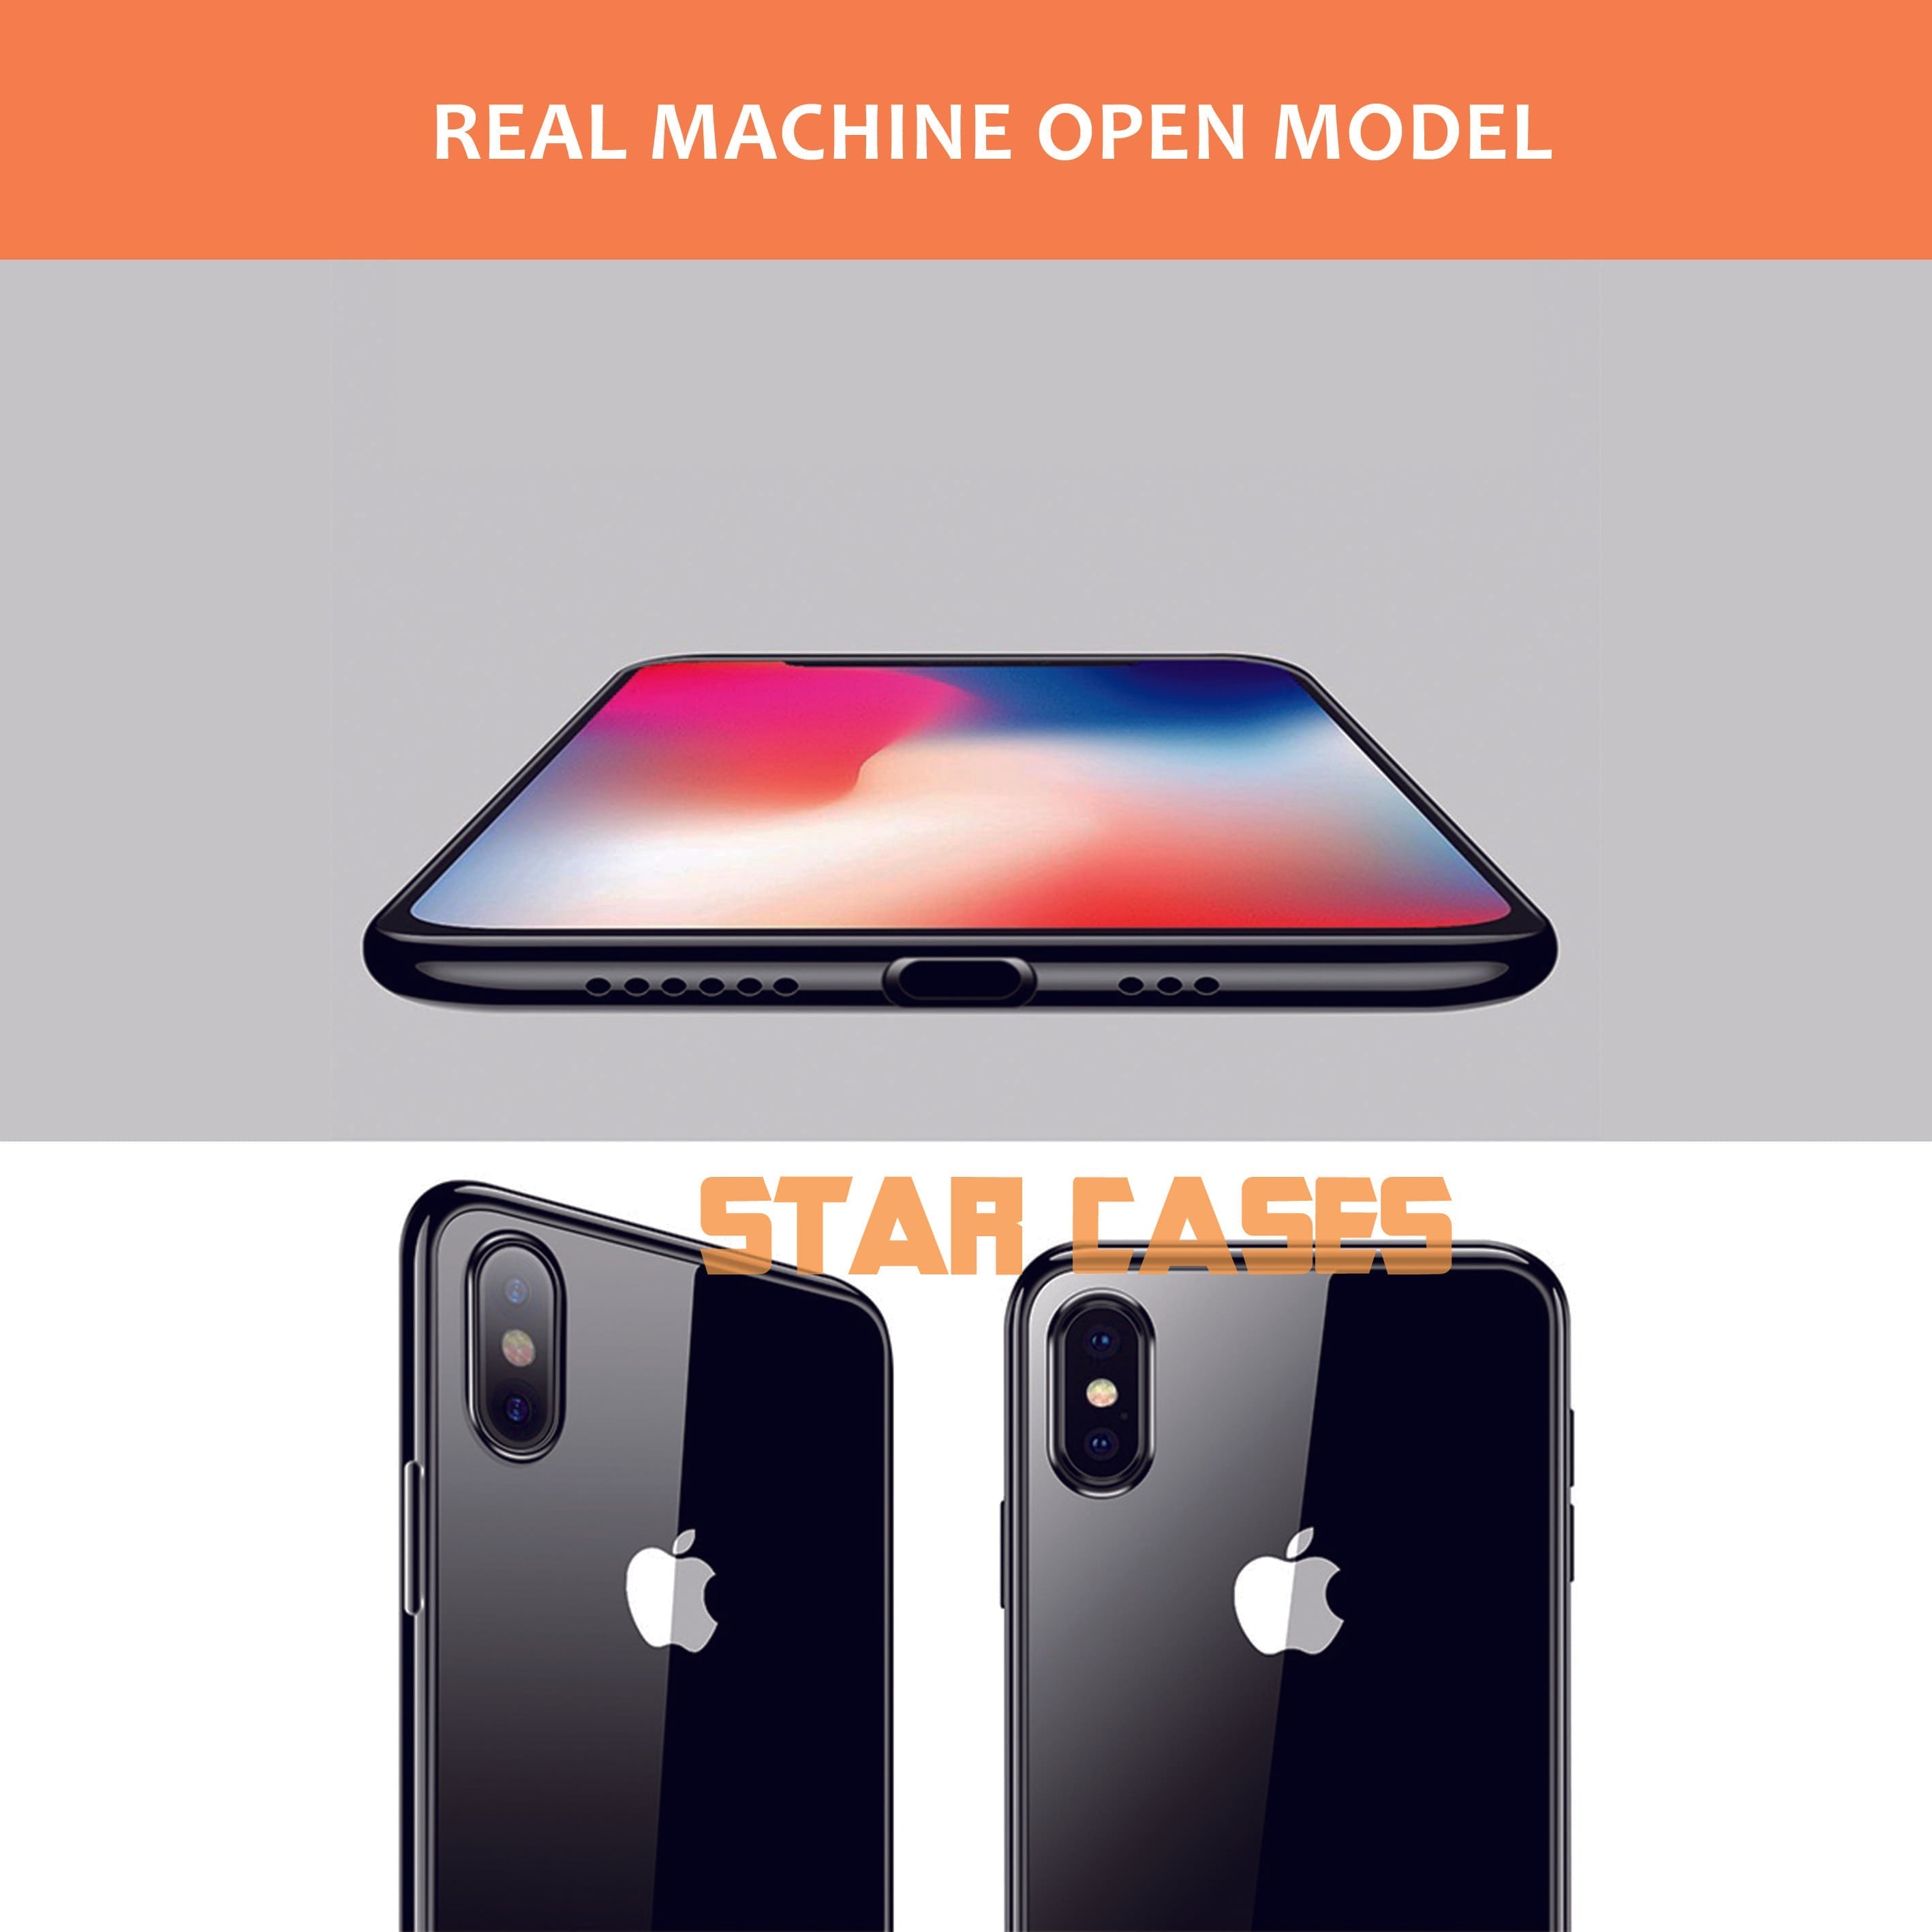 iPhone 7+/8+ Premium Slim Soft Case